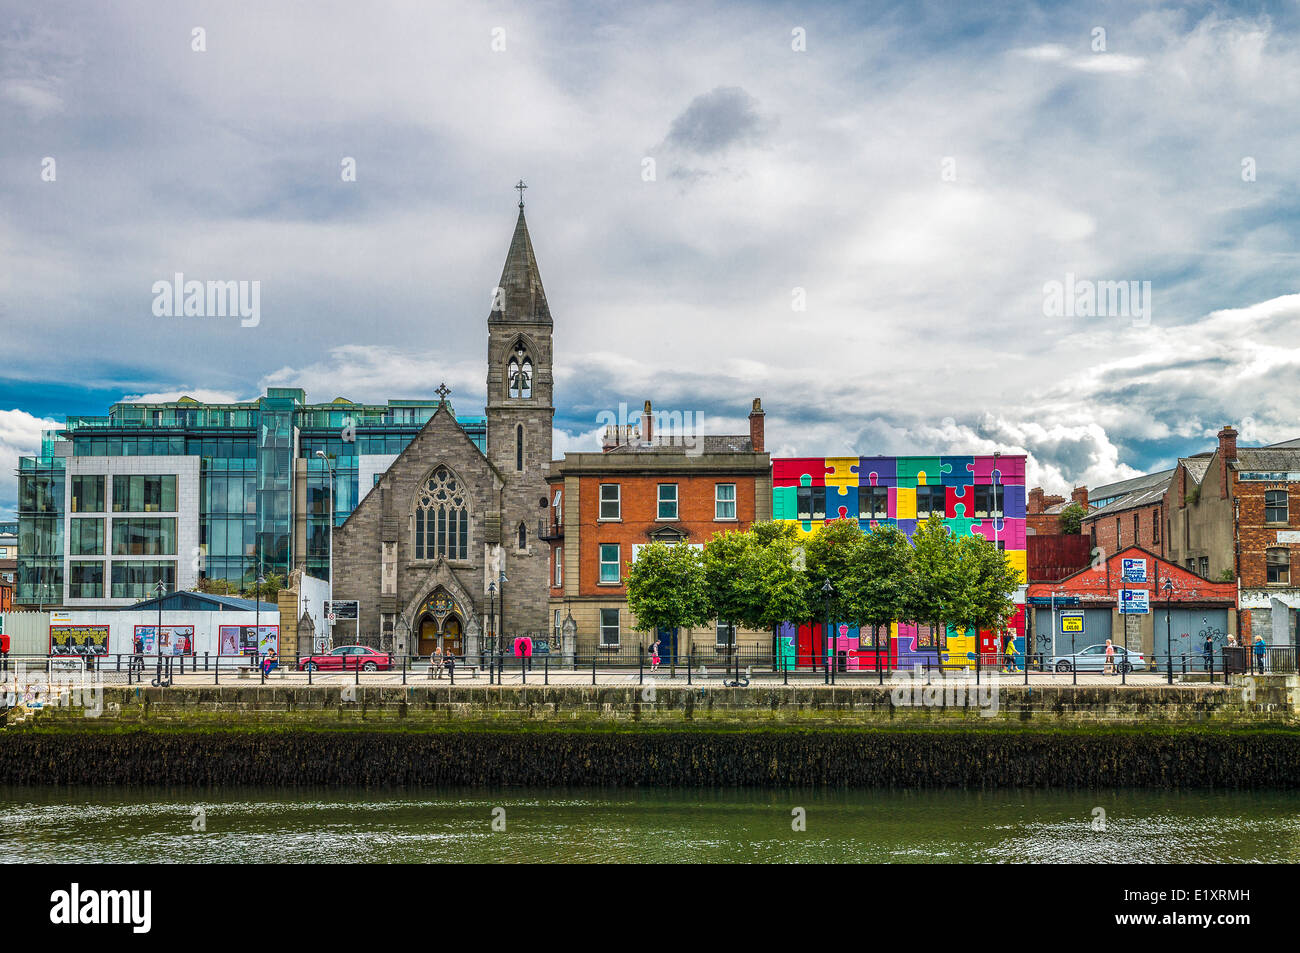 Ireland, Dublin, palaces and church of City quay Stock Photo